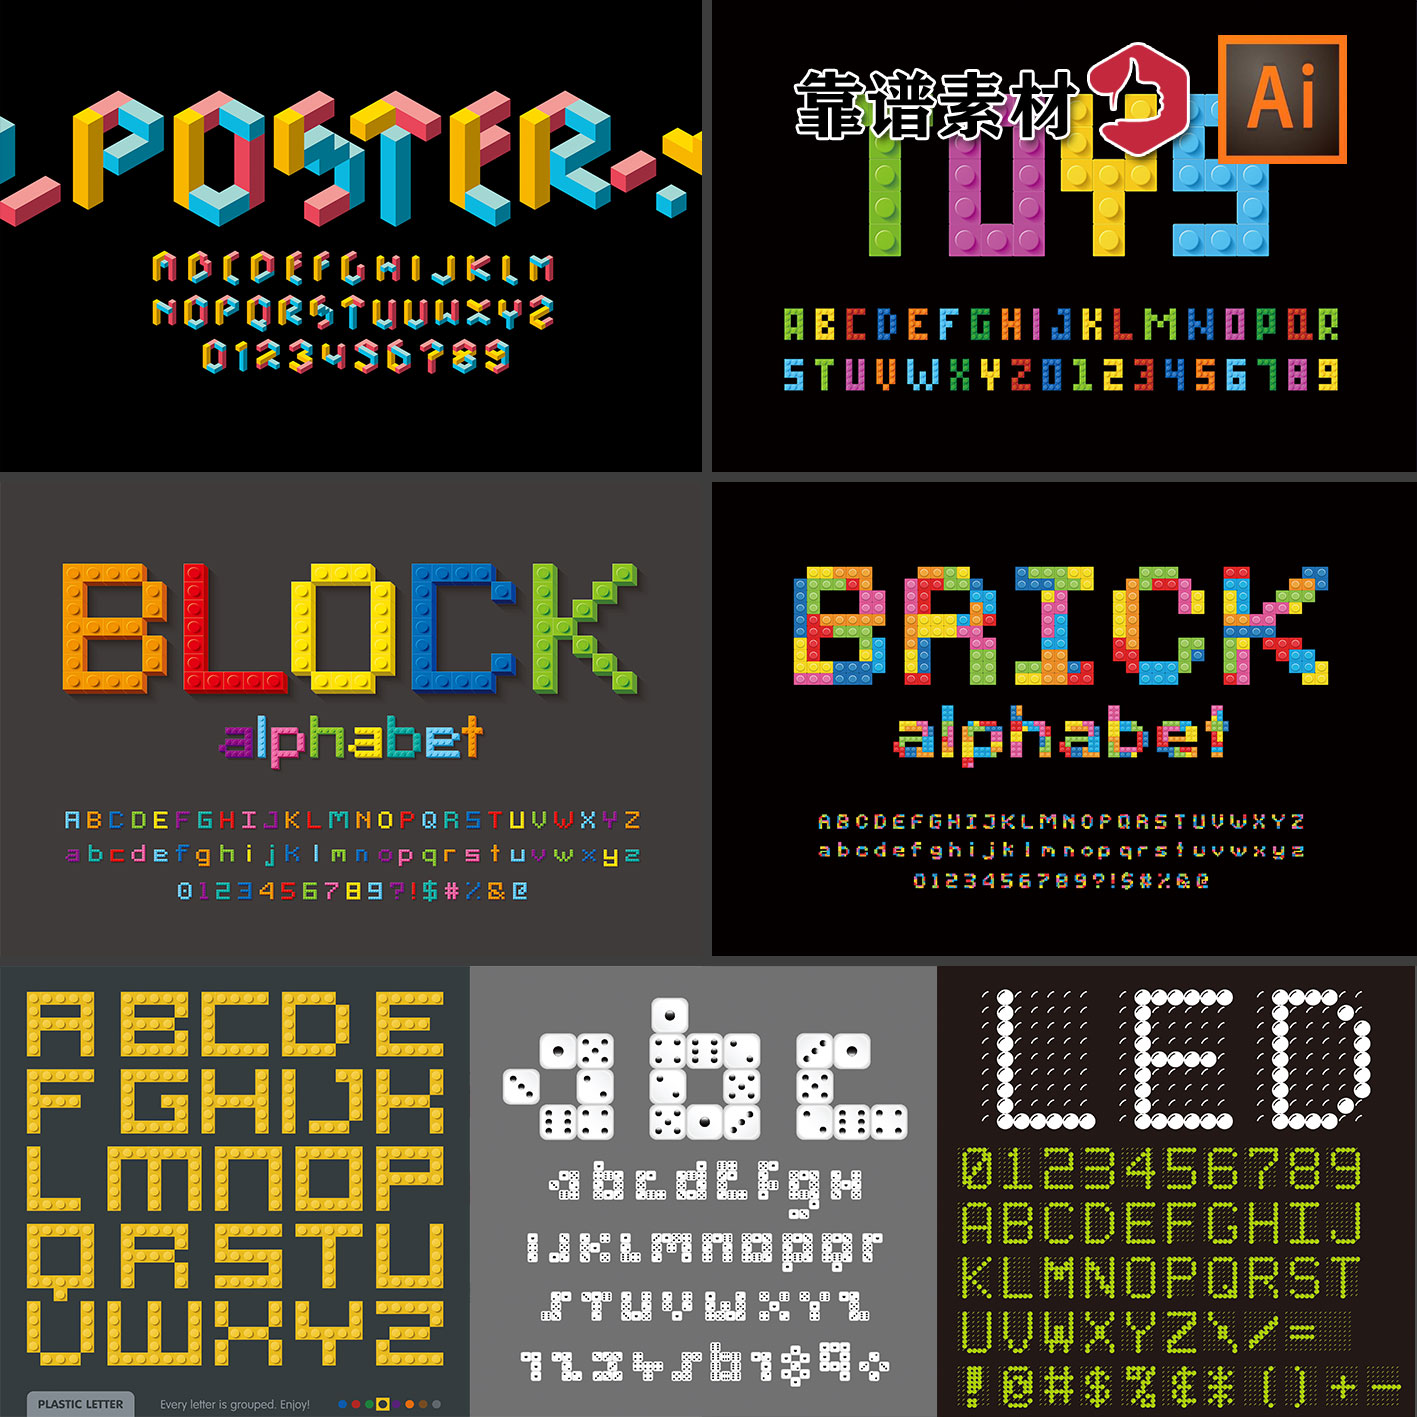 像素点积木格子记分牌26个英文字母创意字体设计AI矢量设计素材